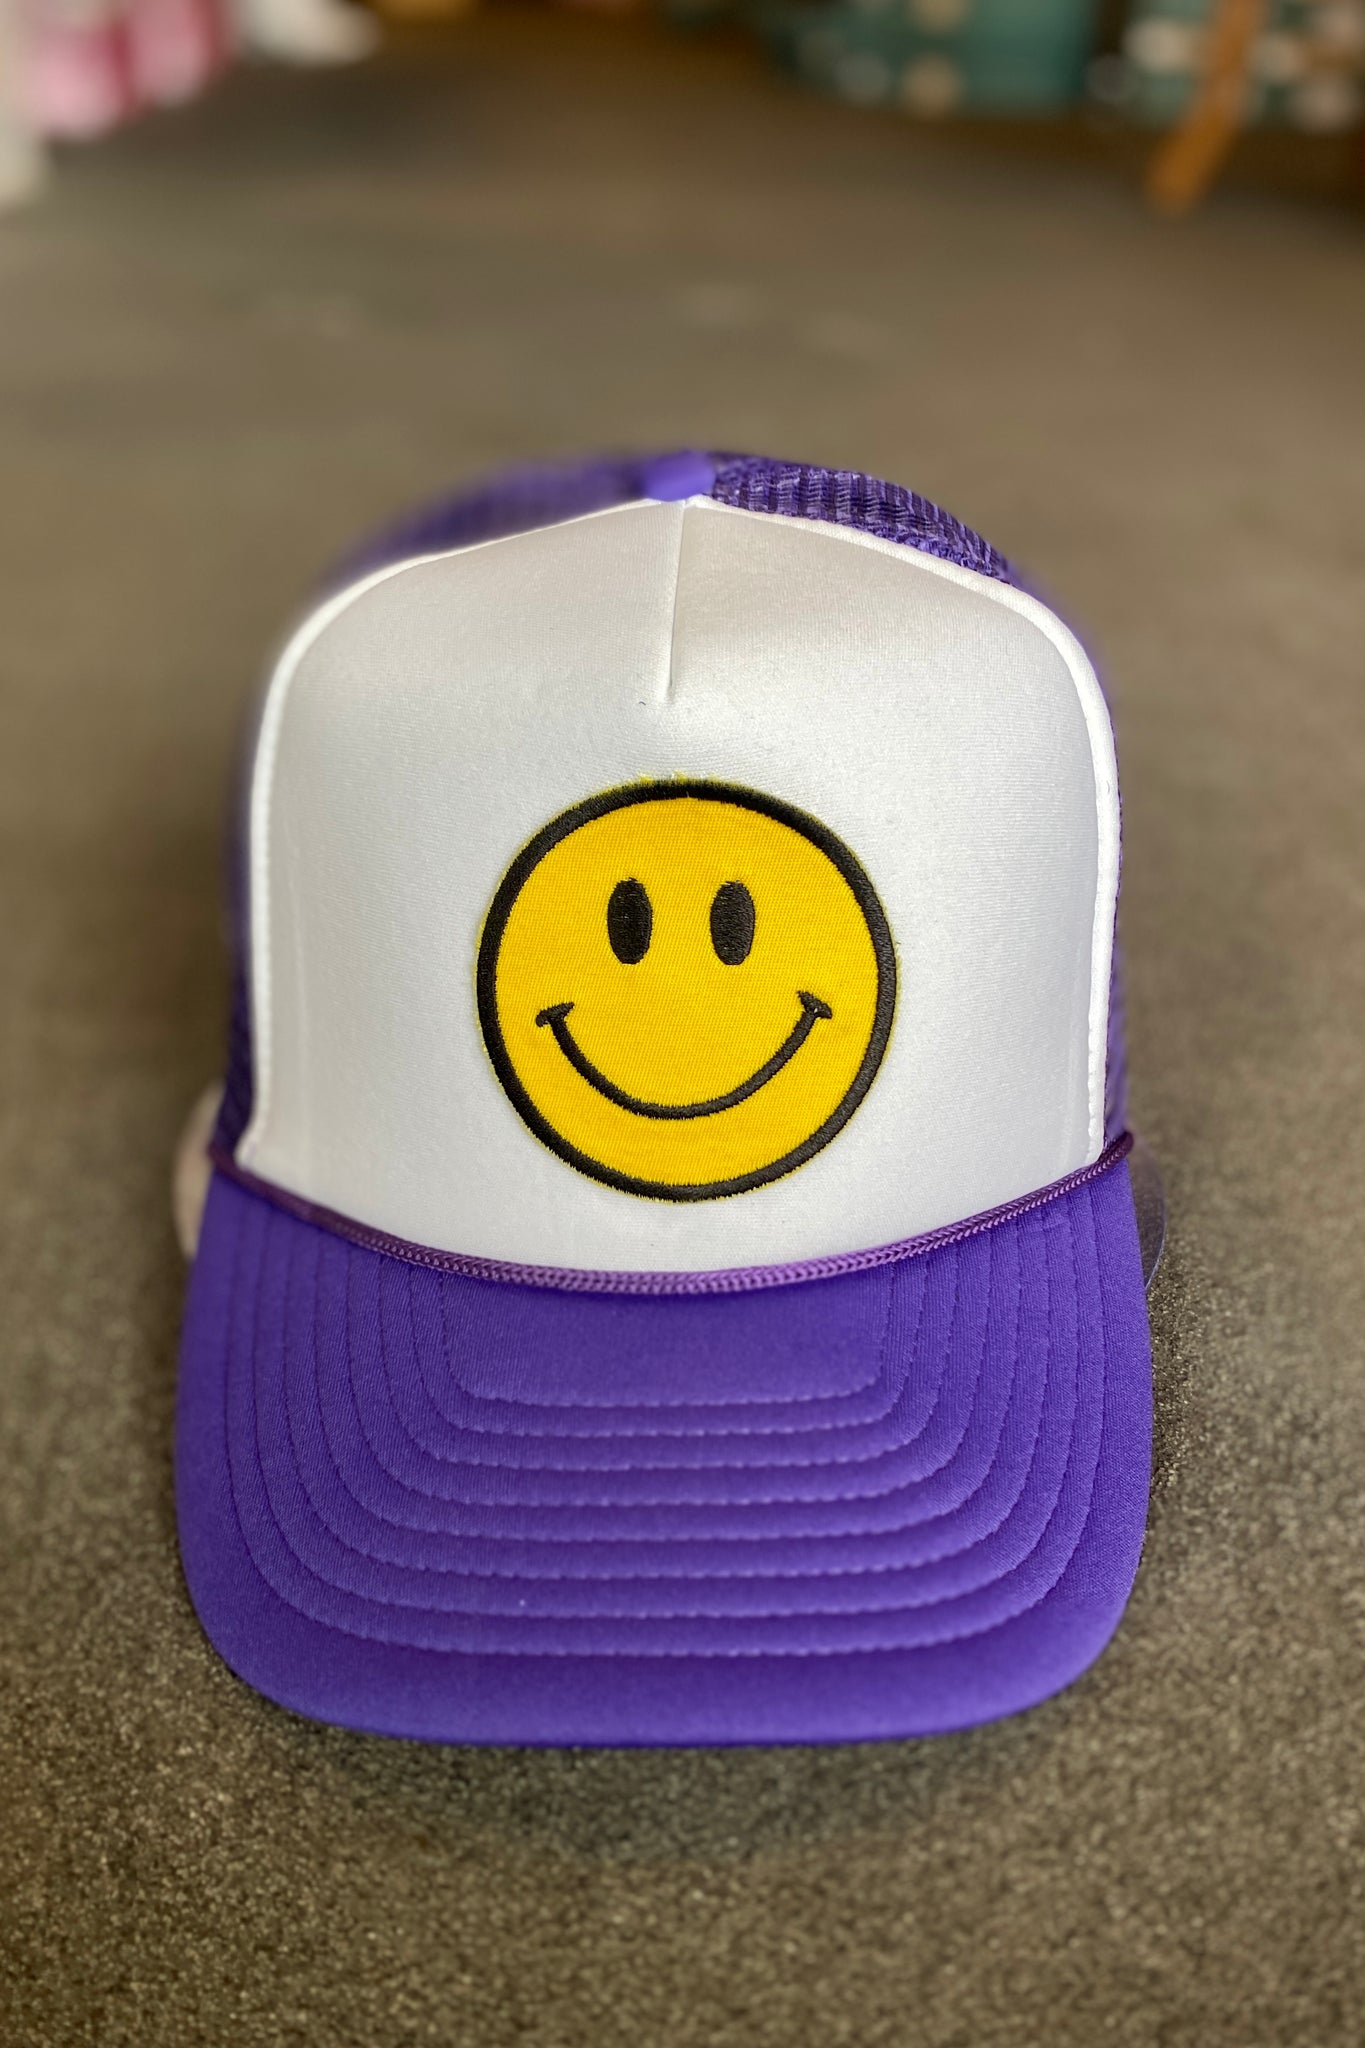 Smile Emoji Trucker Hat-Purple & White